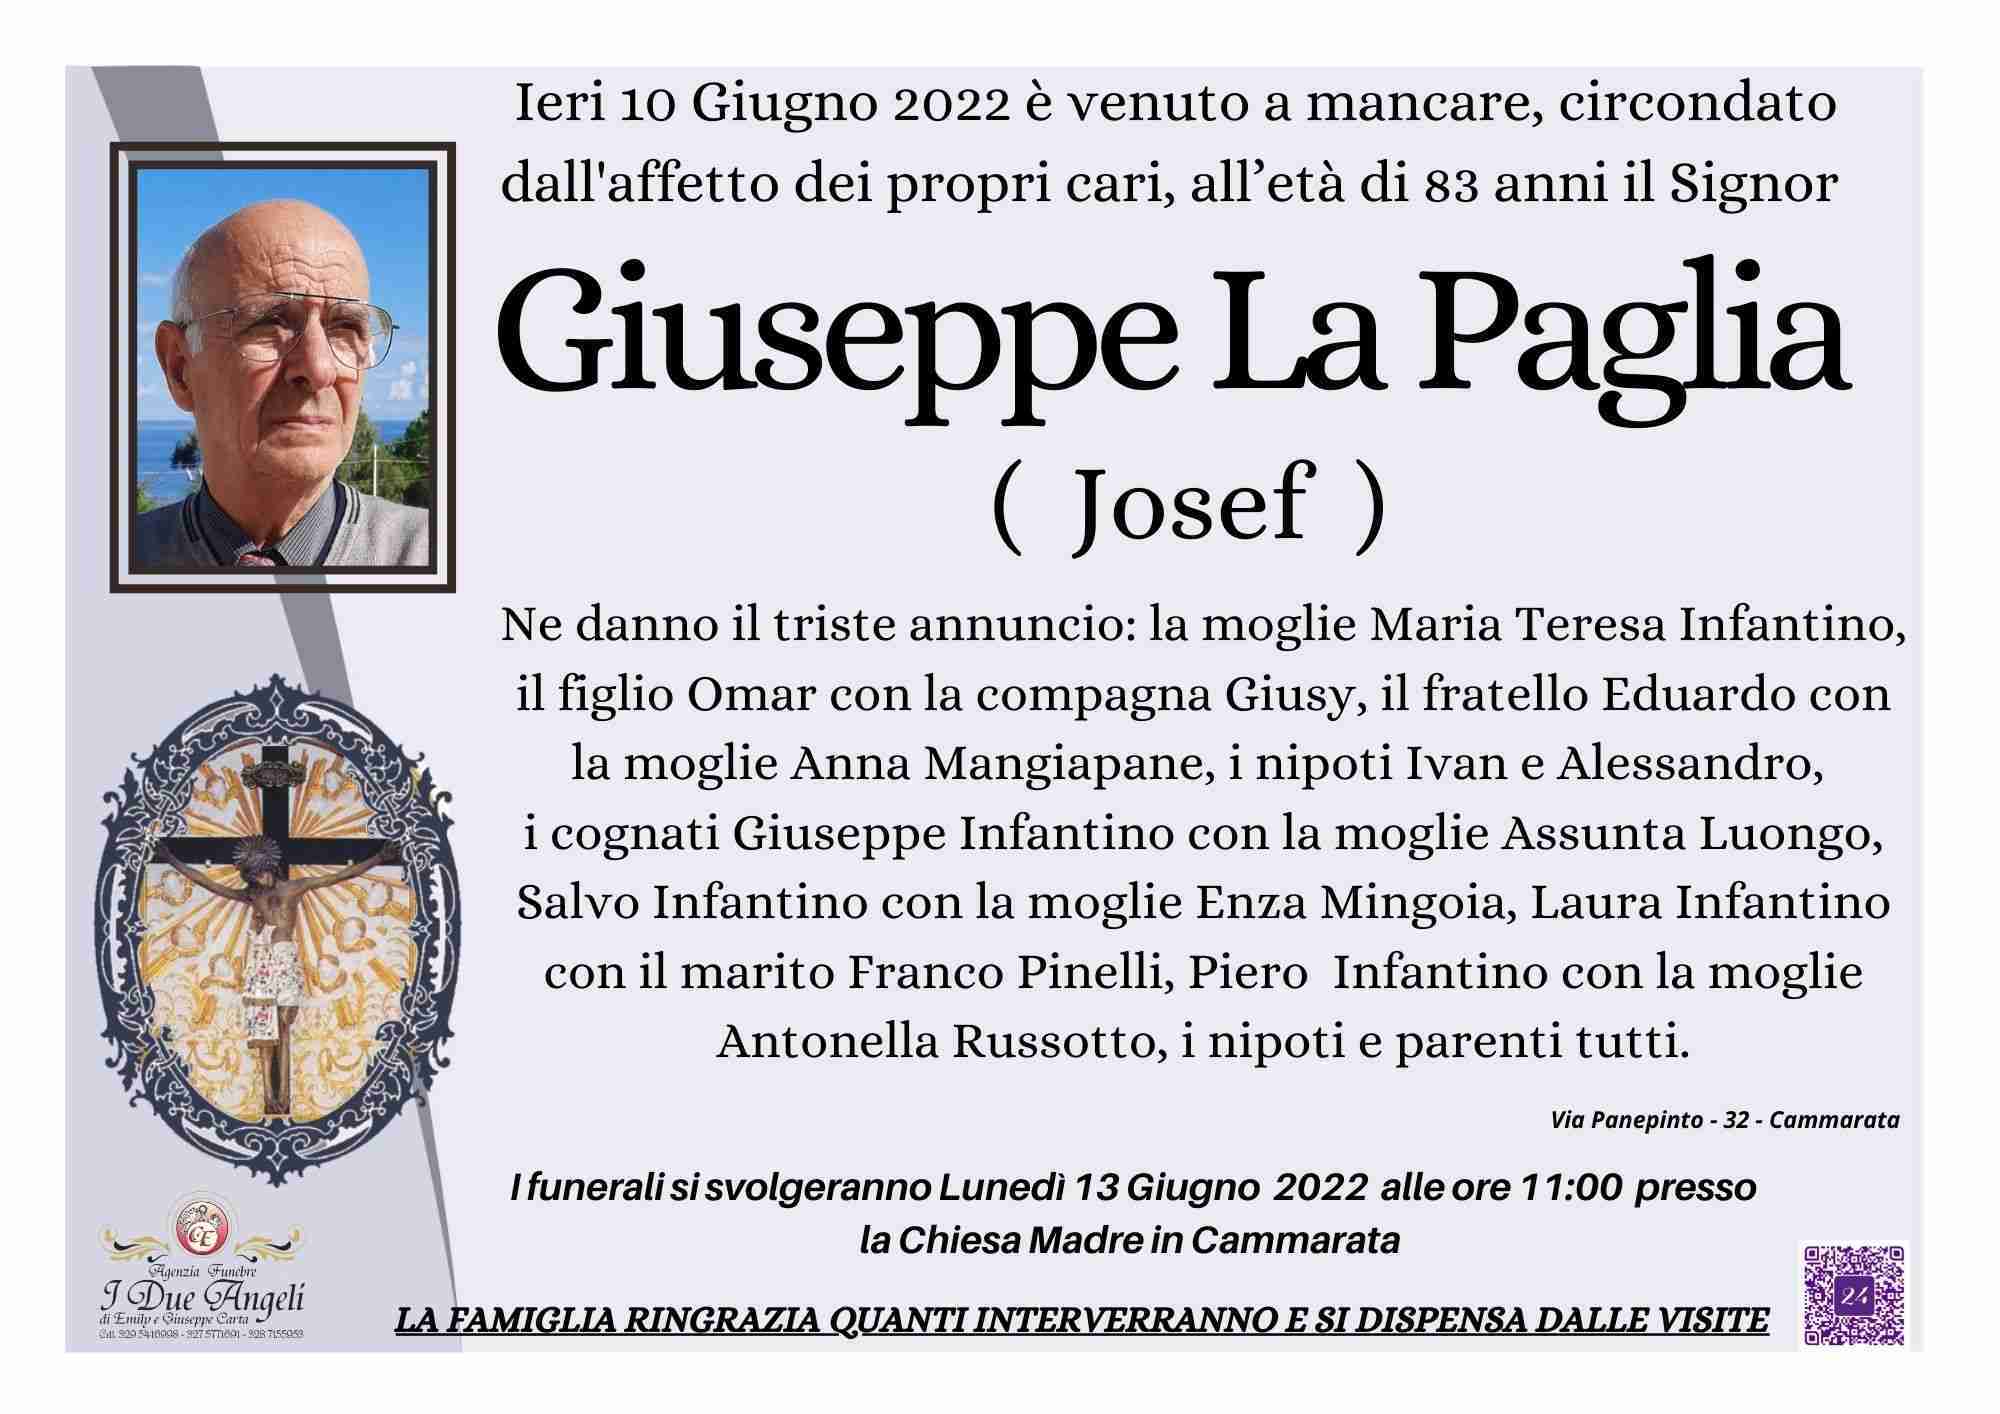 Giuseppe La Paglia